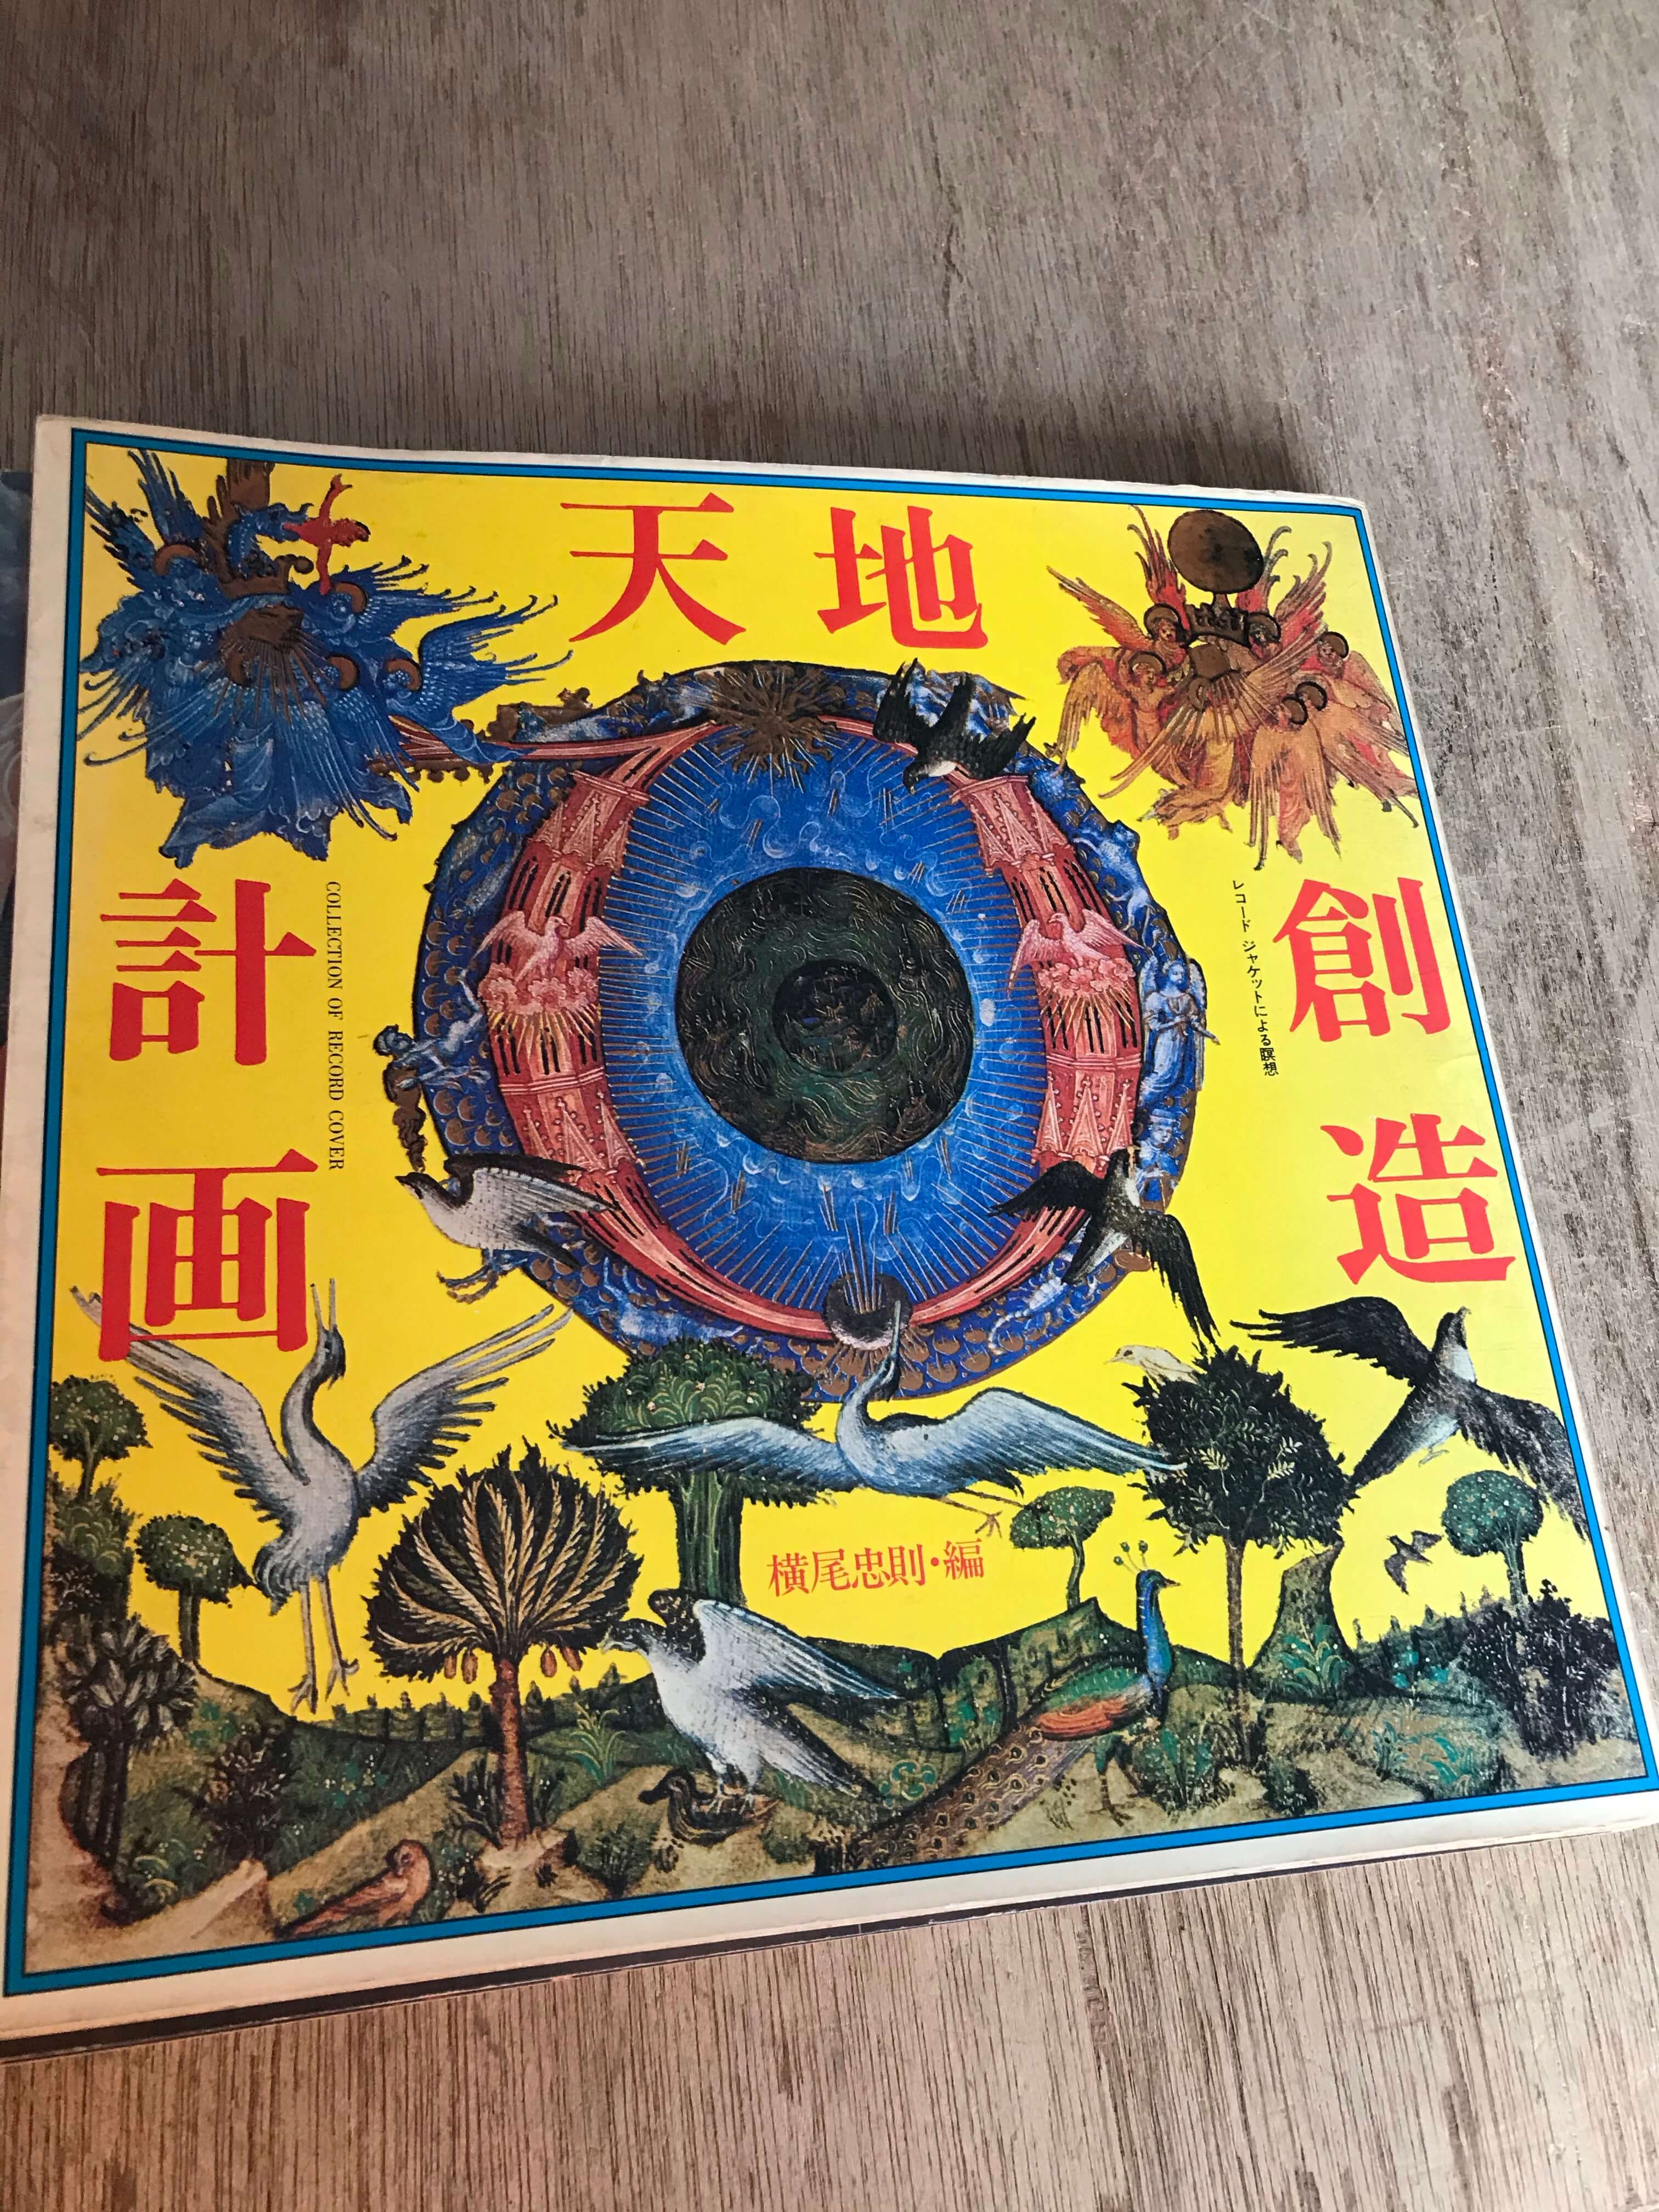 横尾忠則天地創造計画レコードジャケットによる瞑想を買取しました 